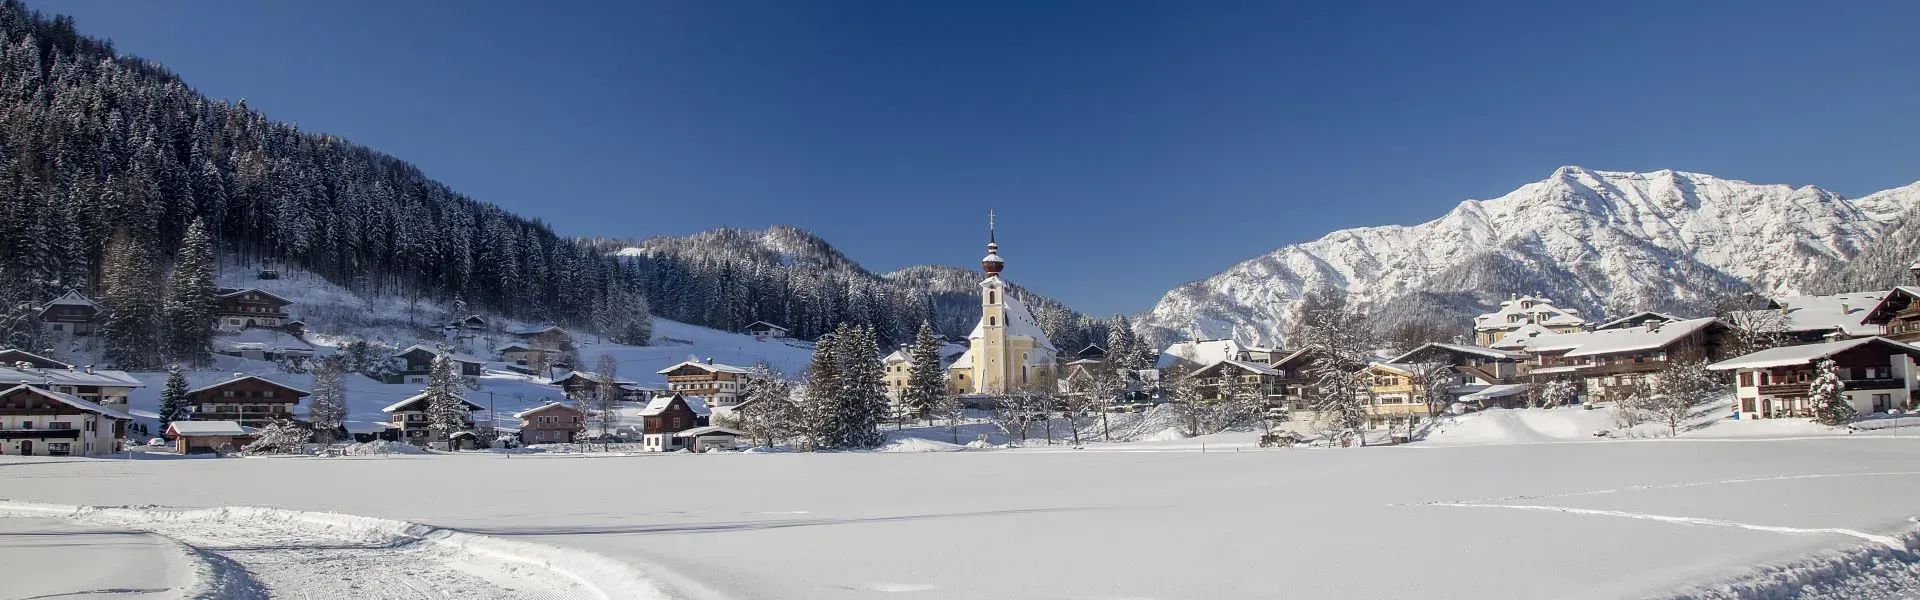 PillerseeTal - Winter - Ortsansicht - Waidring